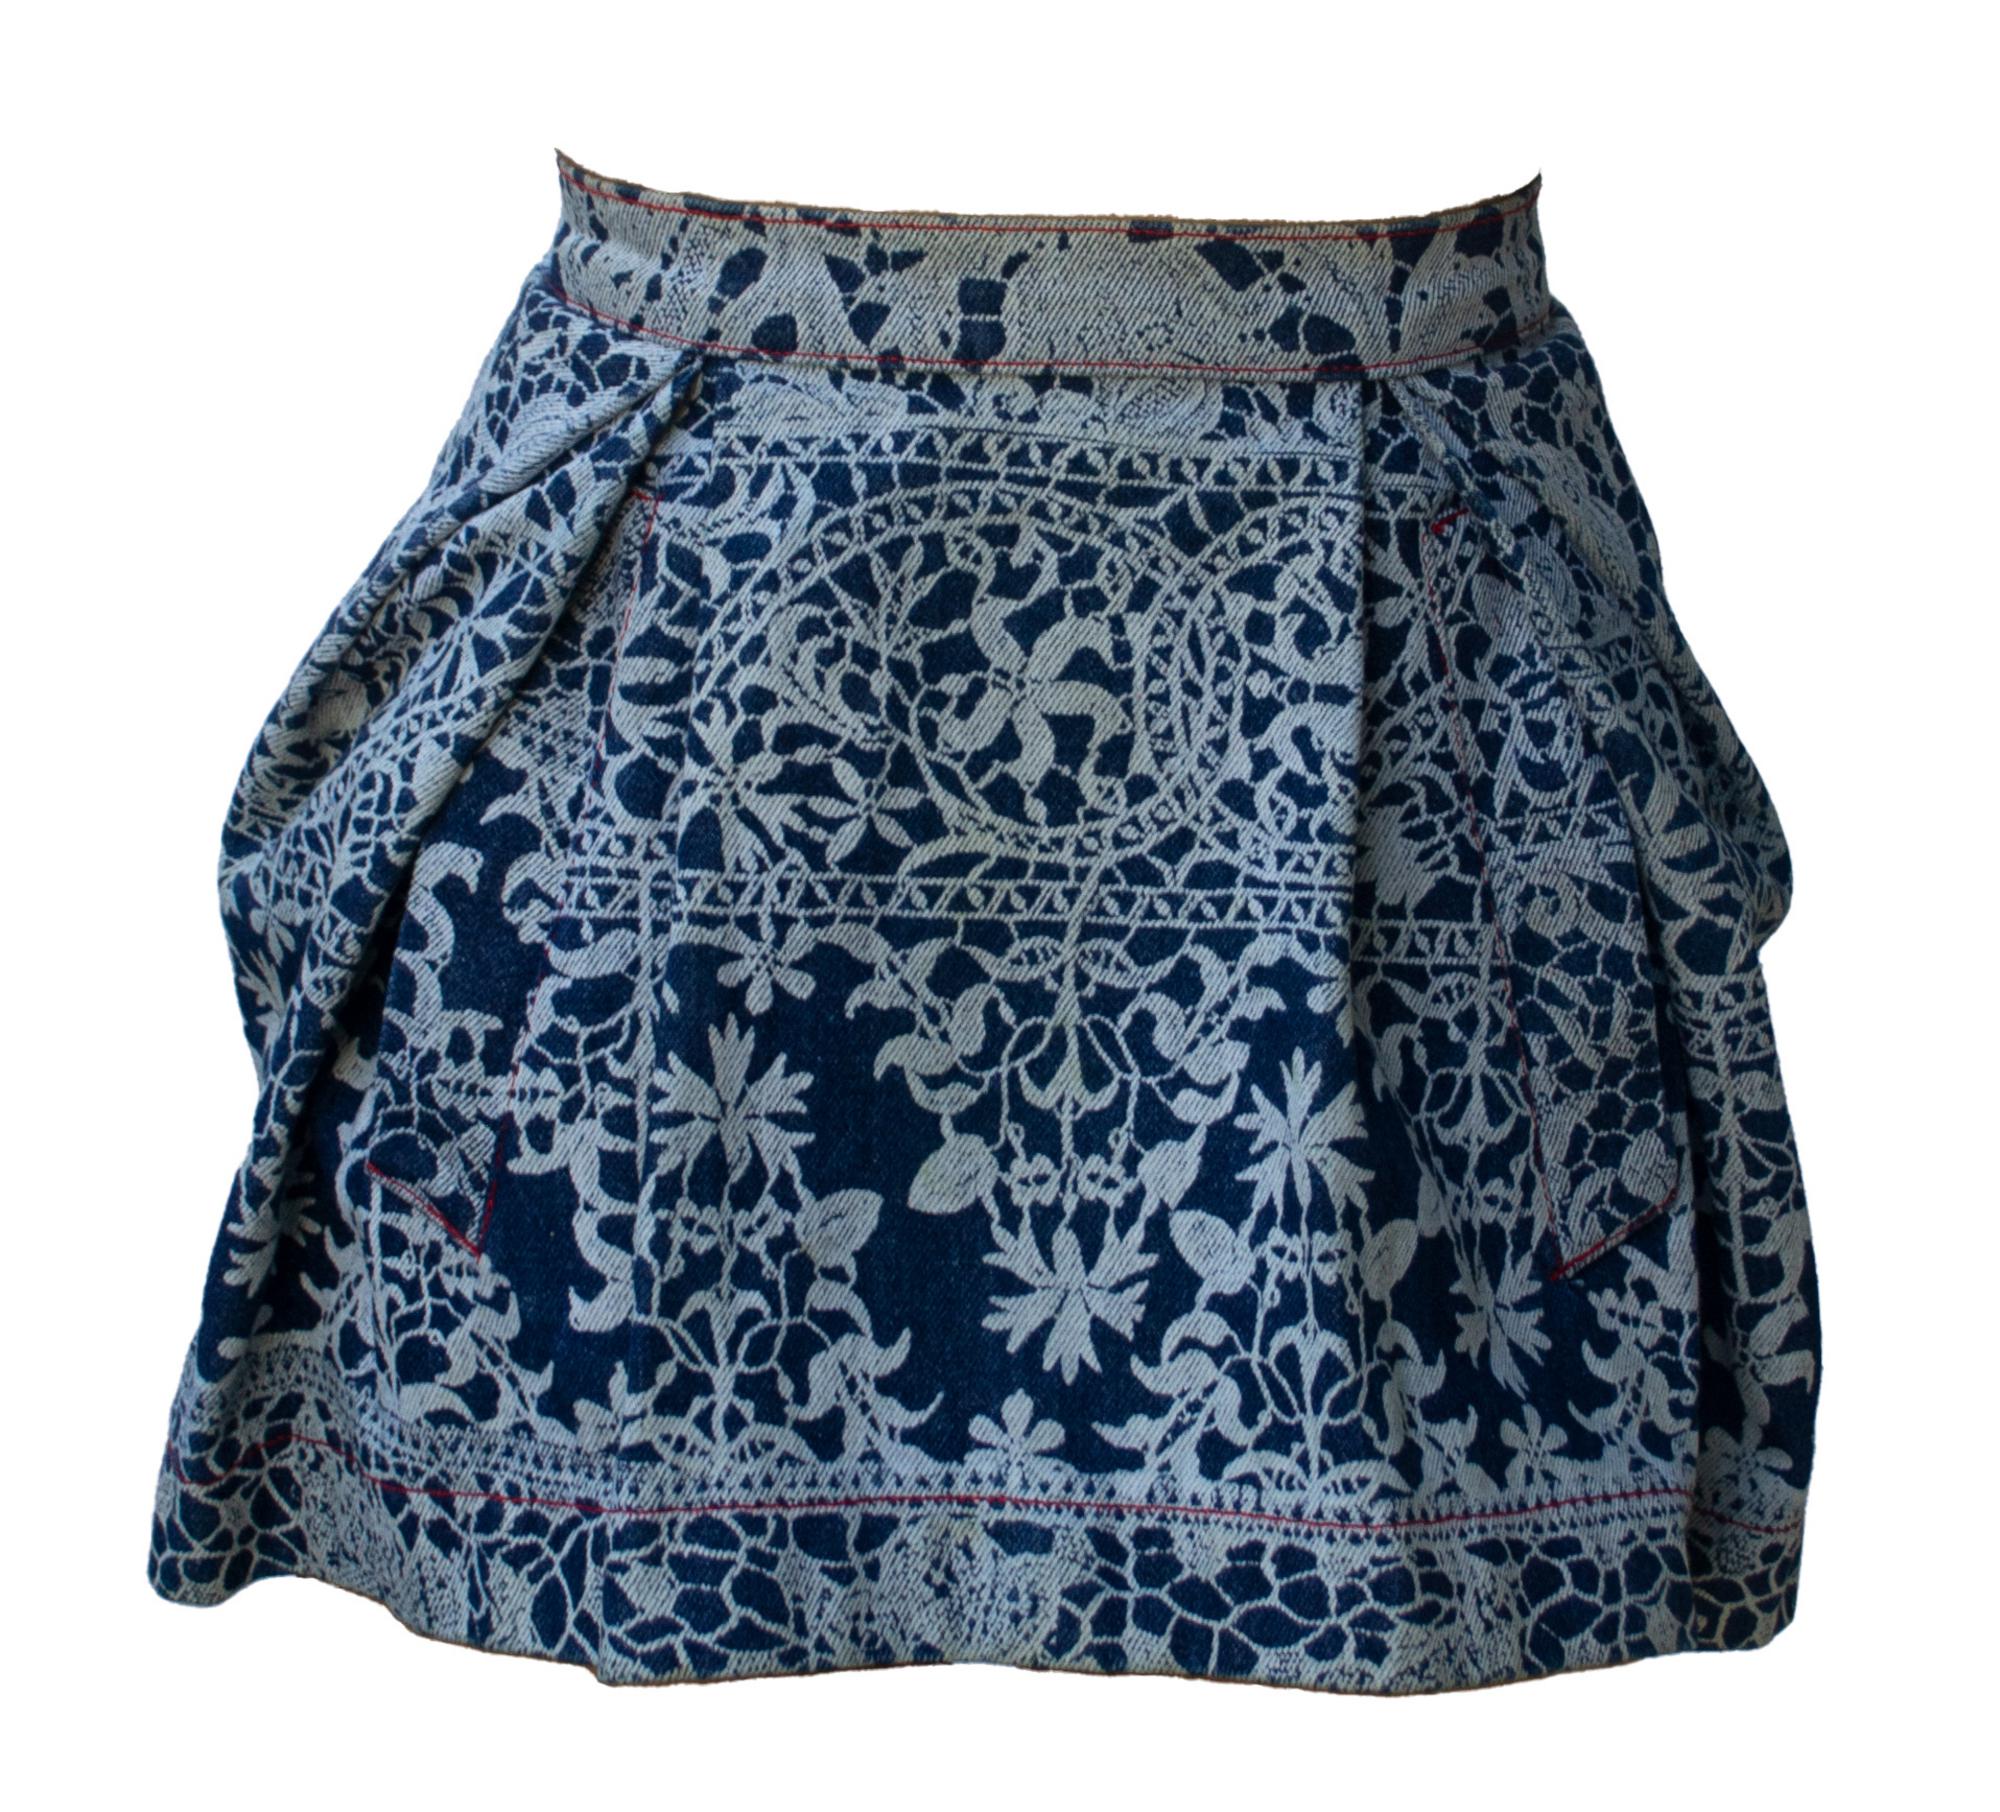 Vivienne Westwood LACE MINI SKIRT Description: Lace print denim skirt top...